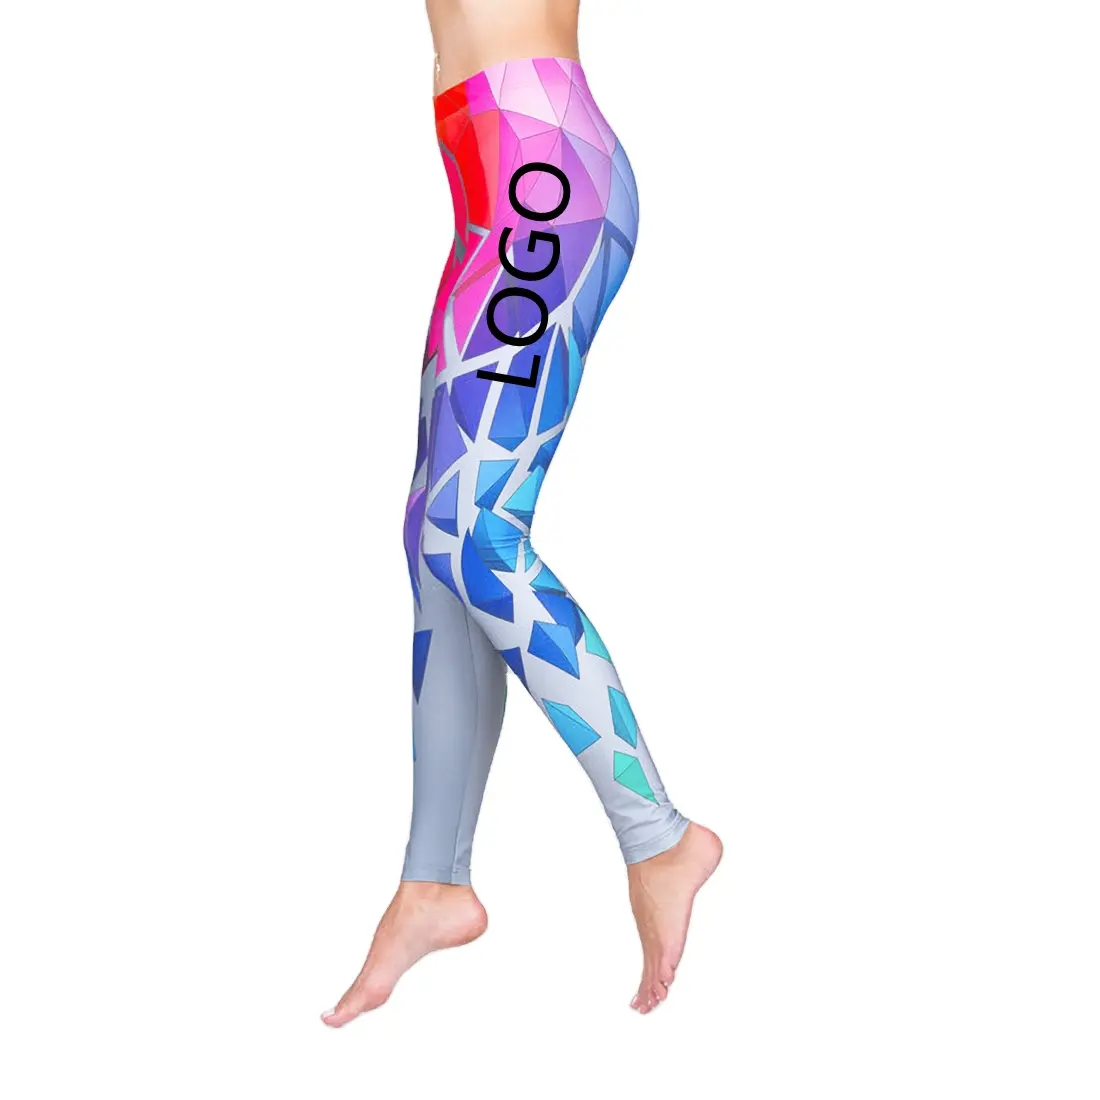 Оптовая продажа, штаны для йоги большого размера с 3D принтом, новый стиль, индивидуальный логотип, боди, поднимает бедра, фитнес, спорт, Леггинсы для йоги